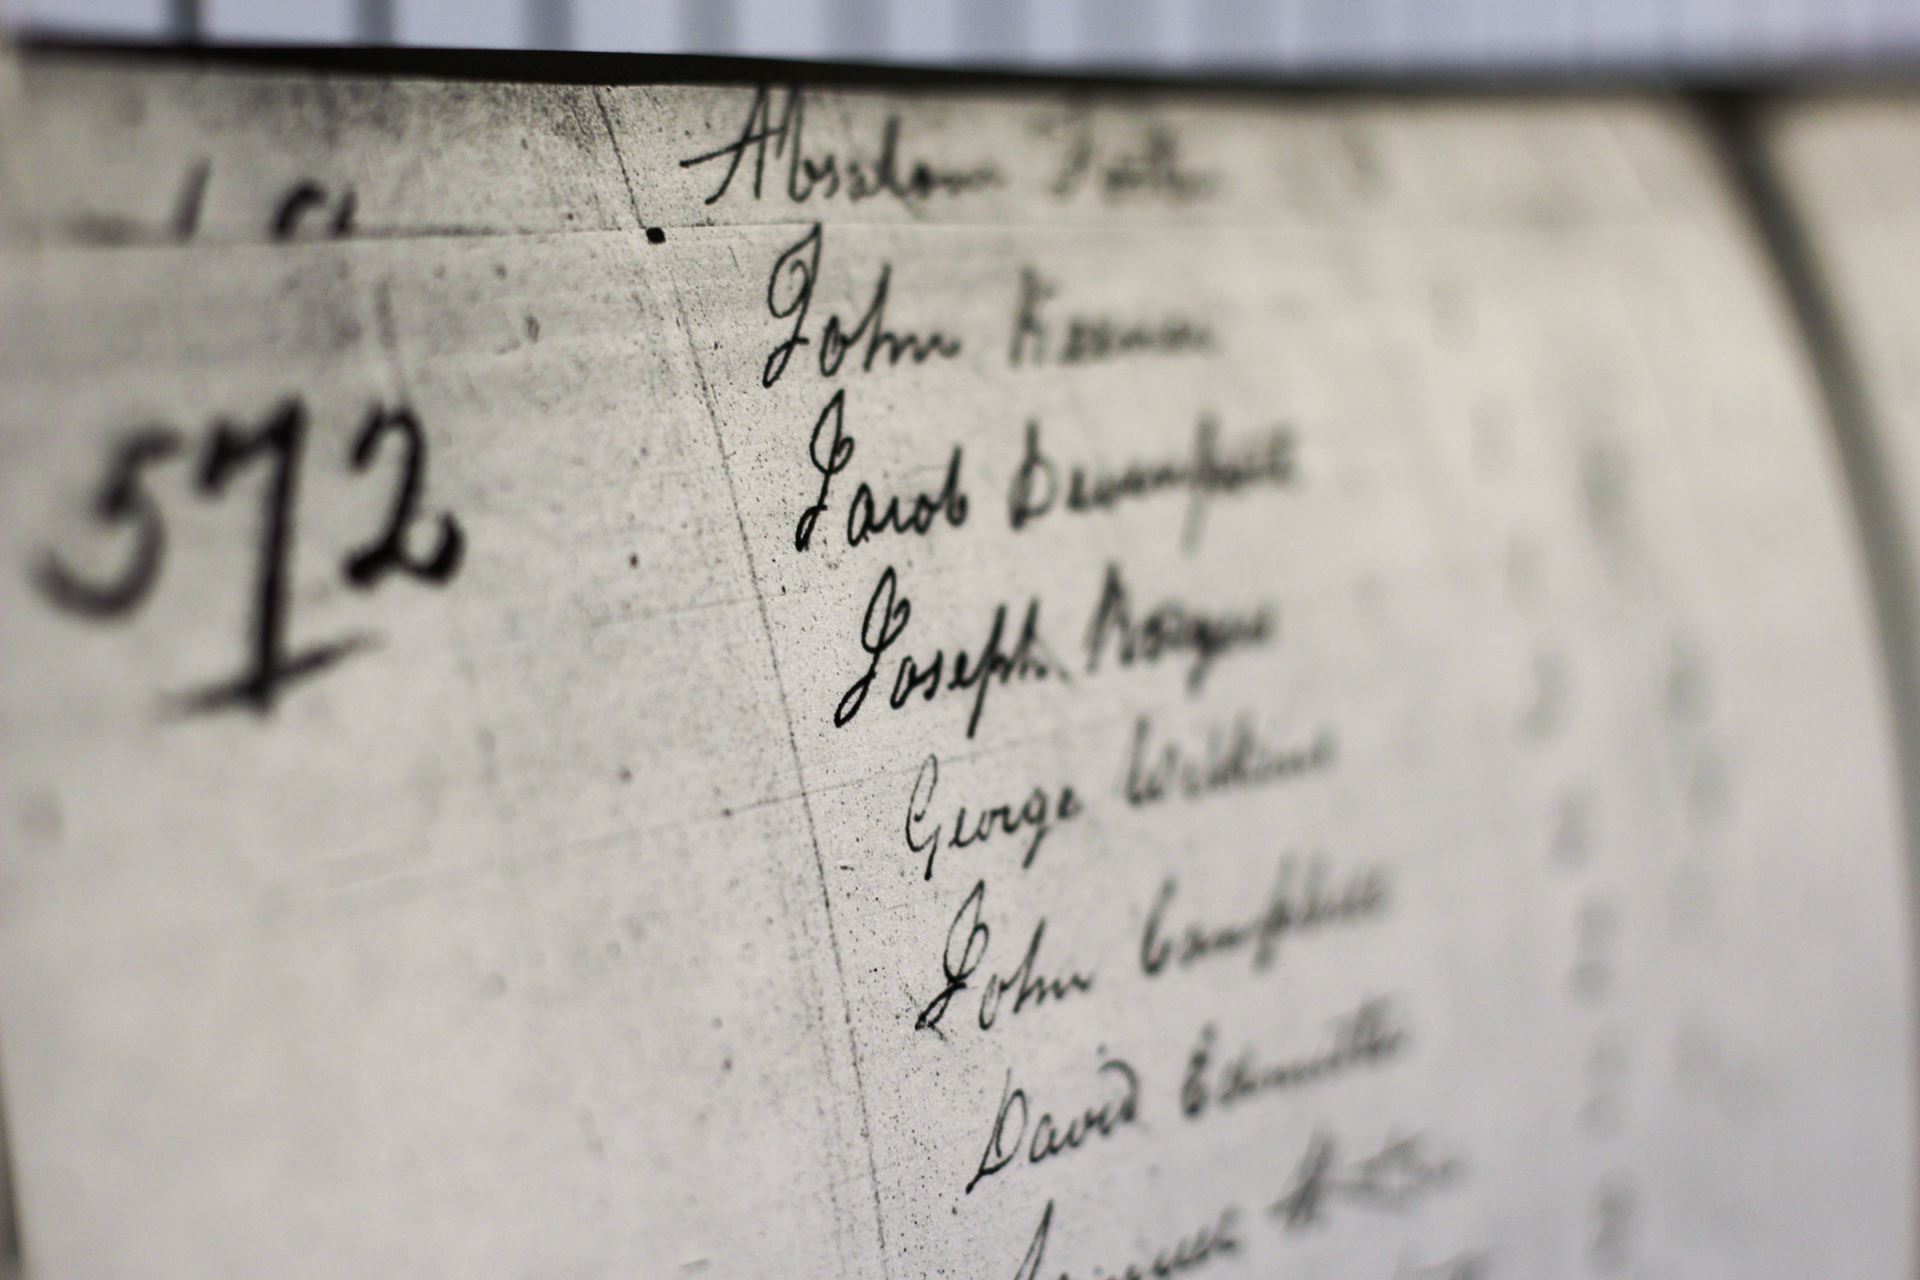 A small rectangular image of a handwritten list of names